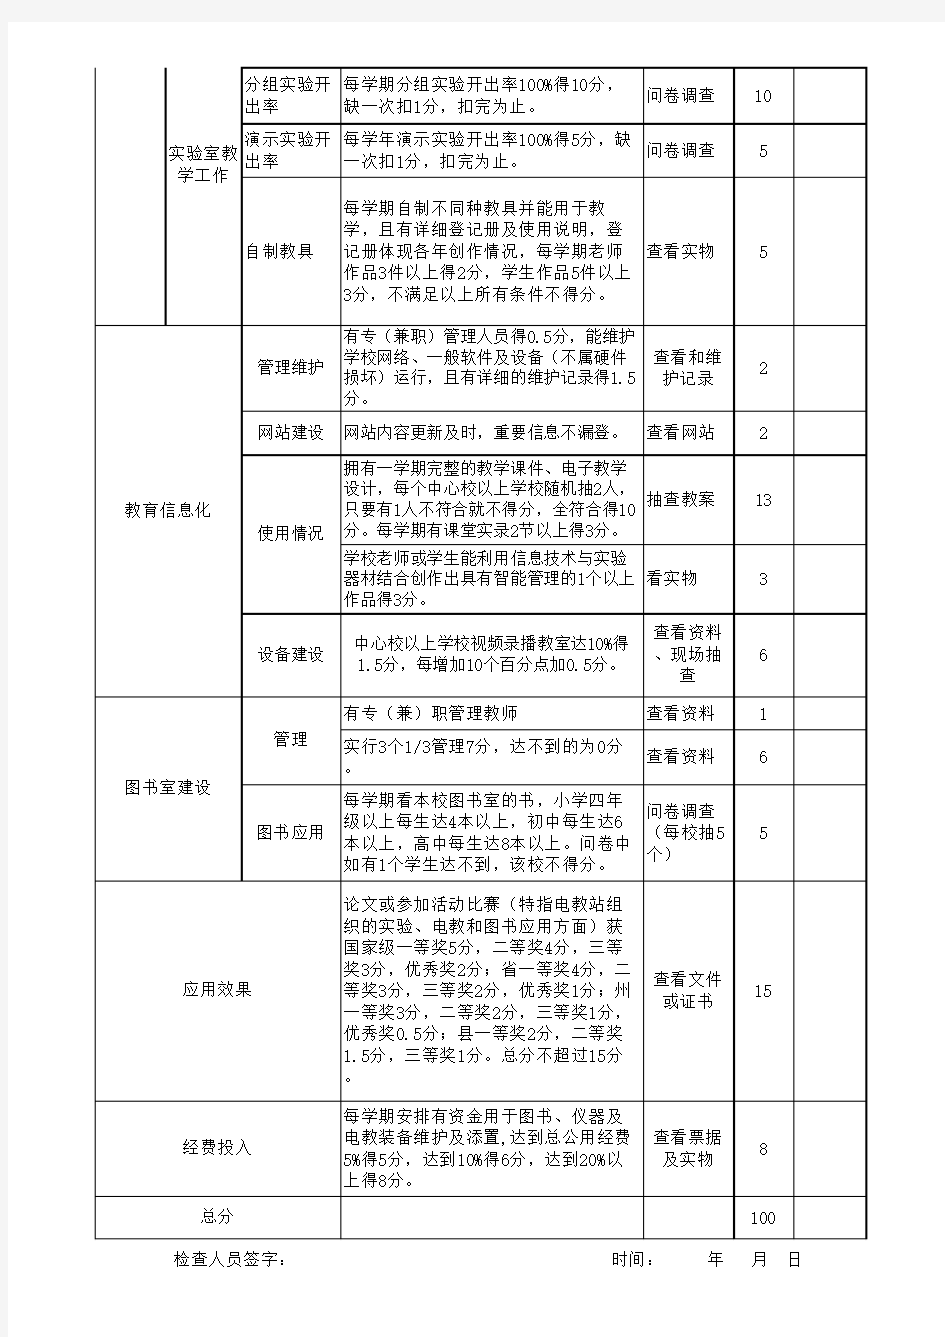 4.台江县学校教学装备及应用考核细则